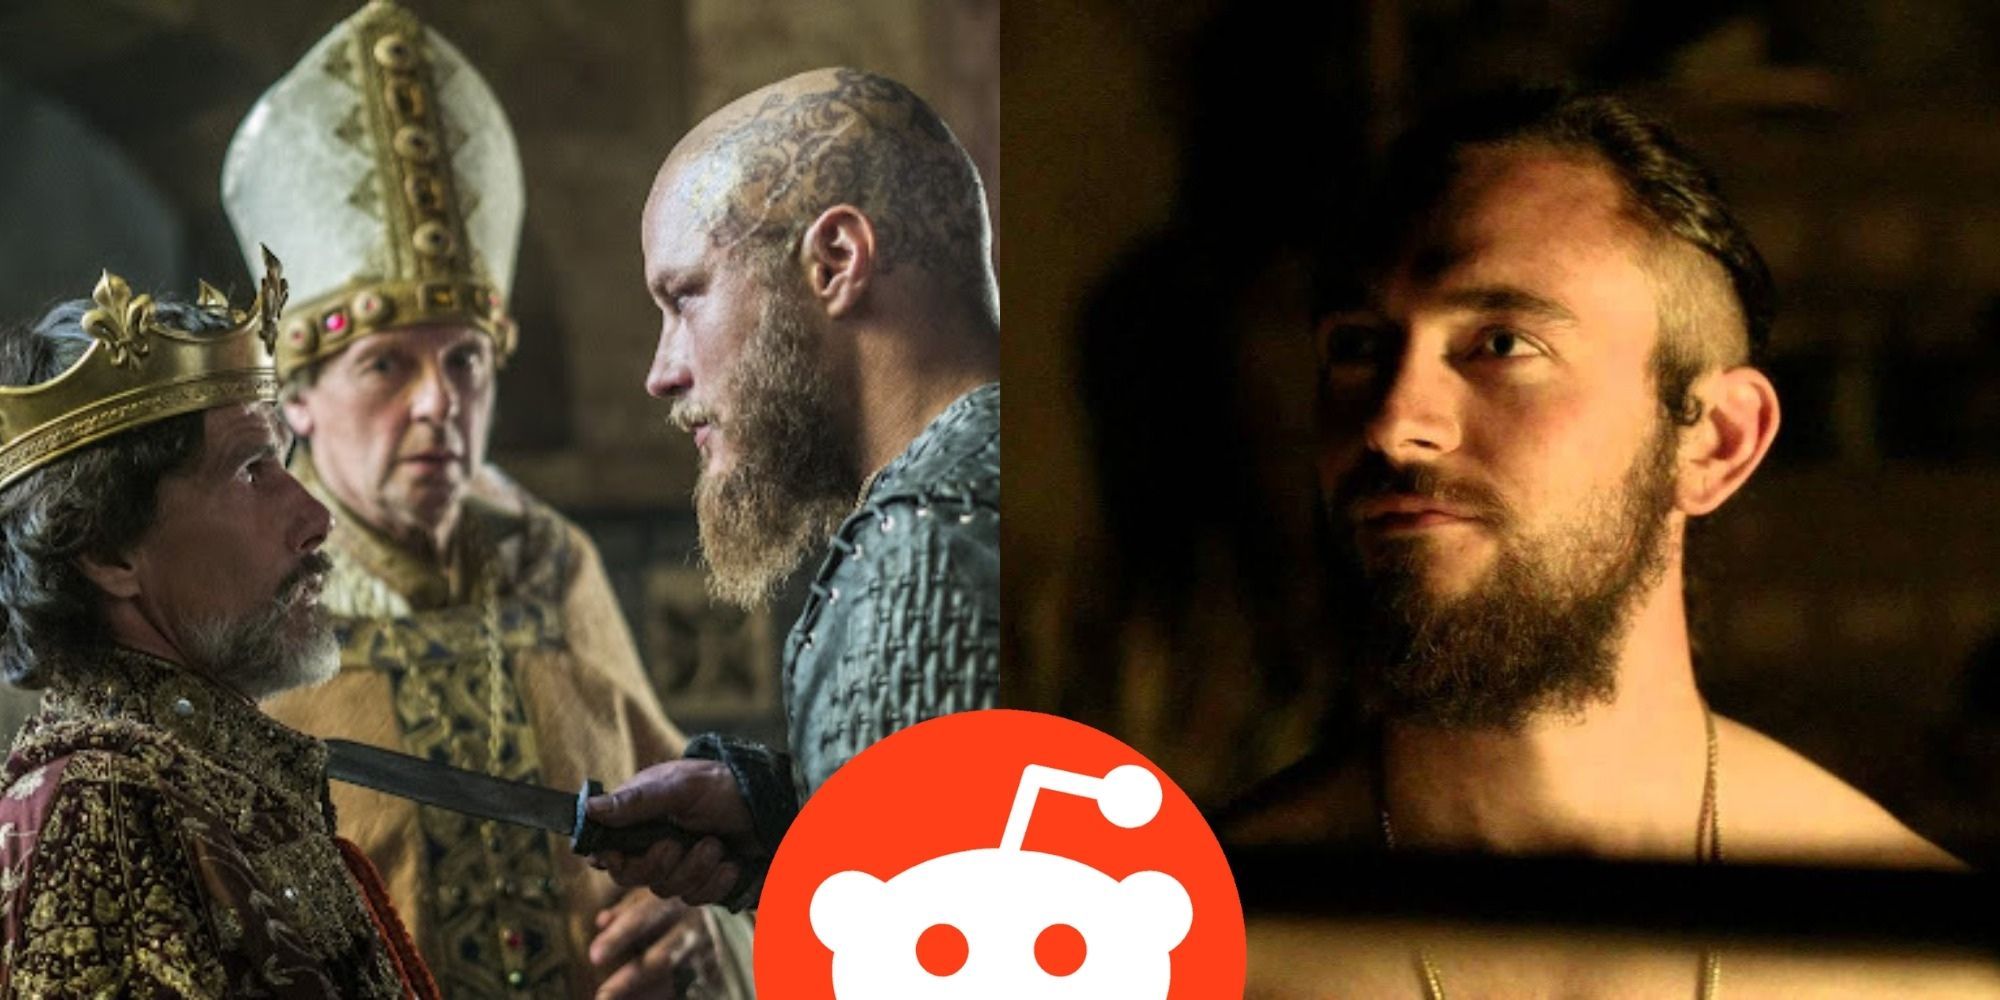 Vikings 10 Favorite Storylines According To Reddit